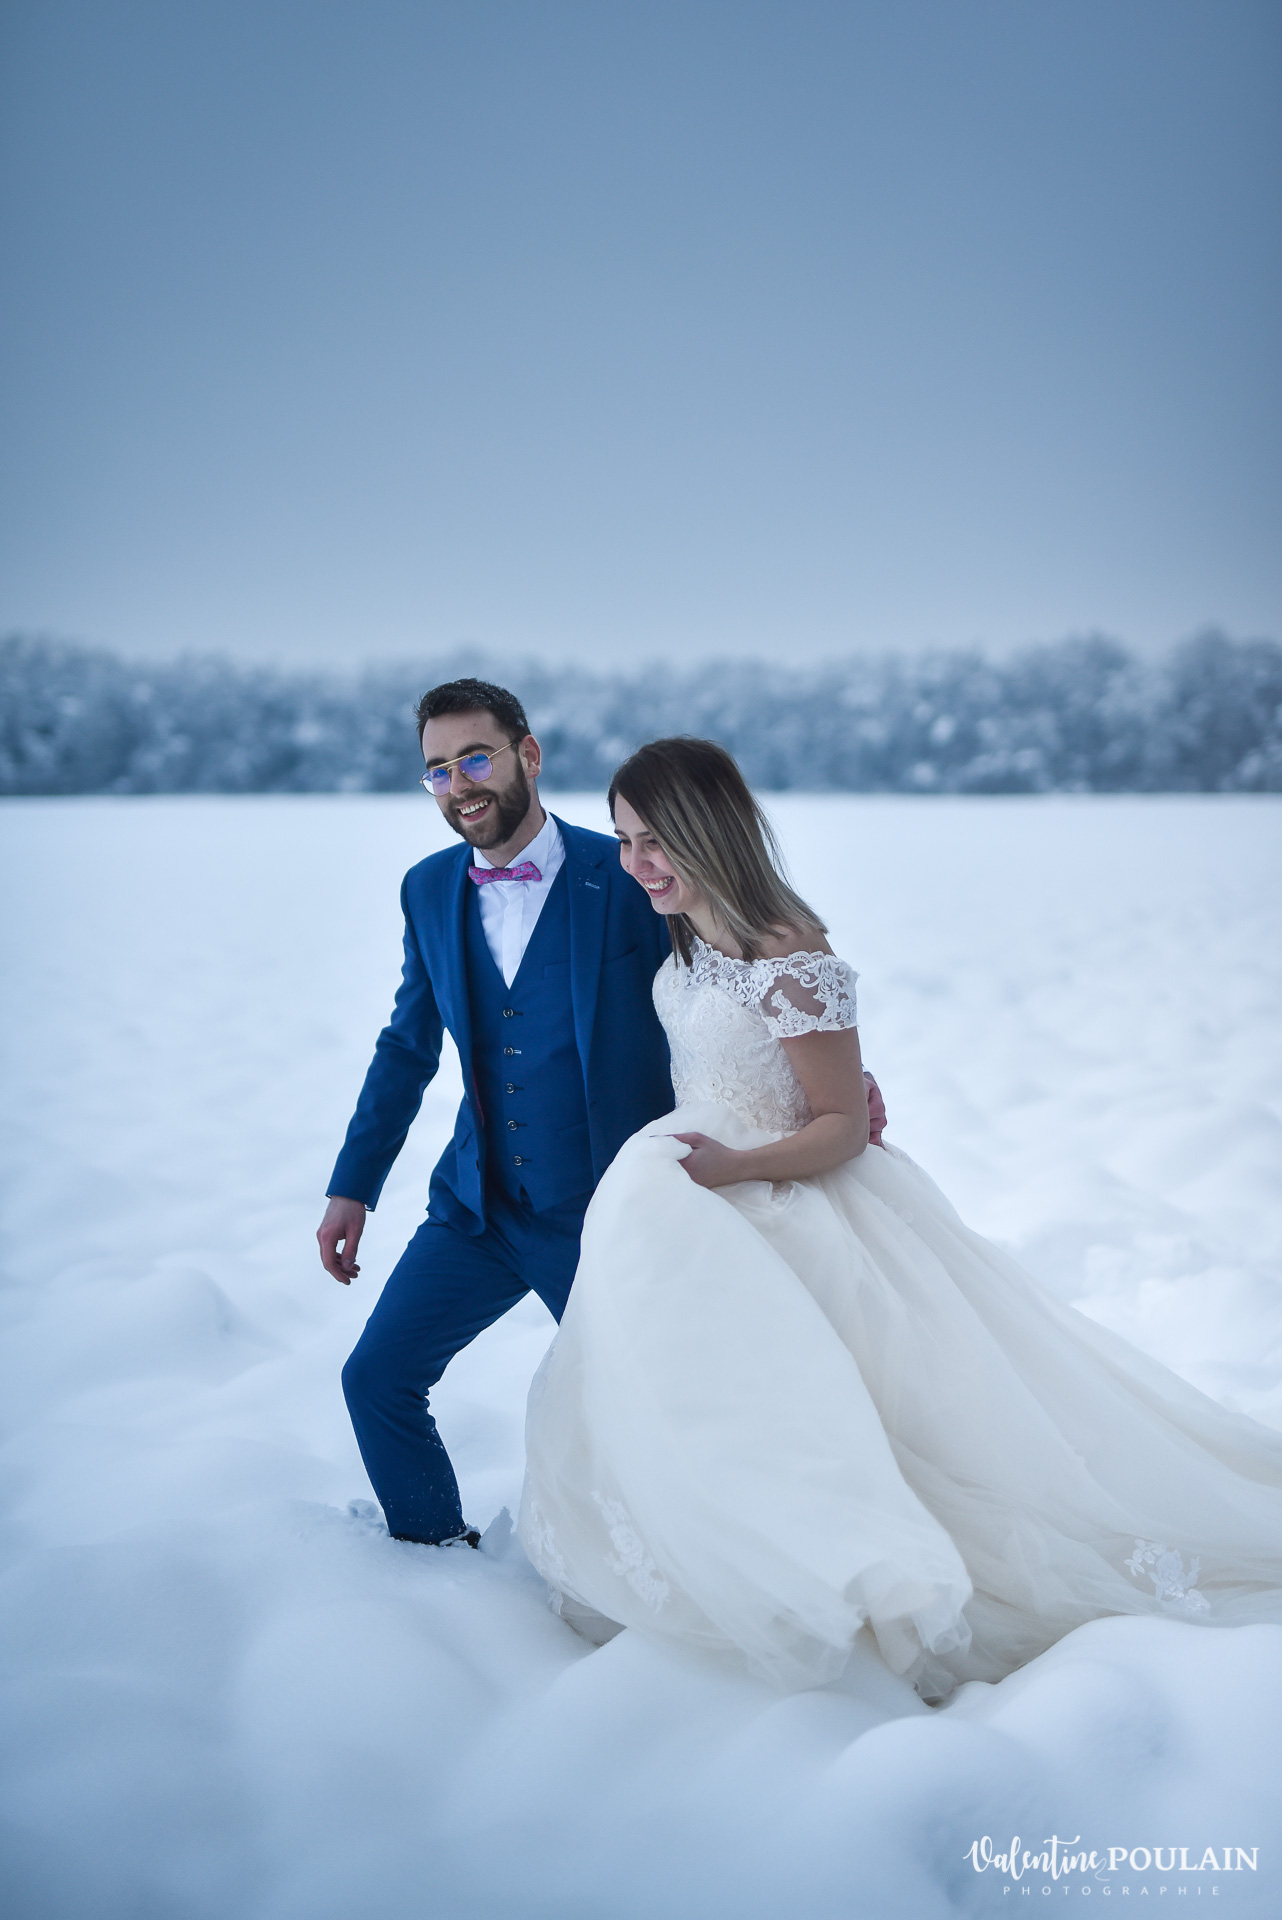 Se marier en hiver sous la neige - Valentine Poulain walking